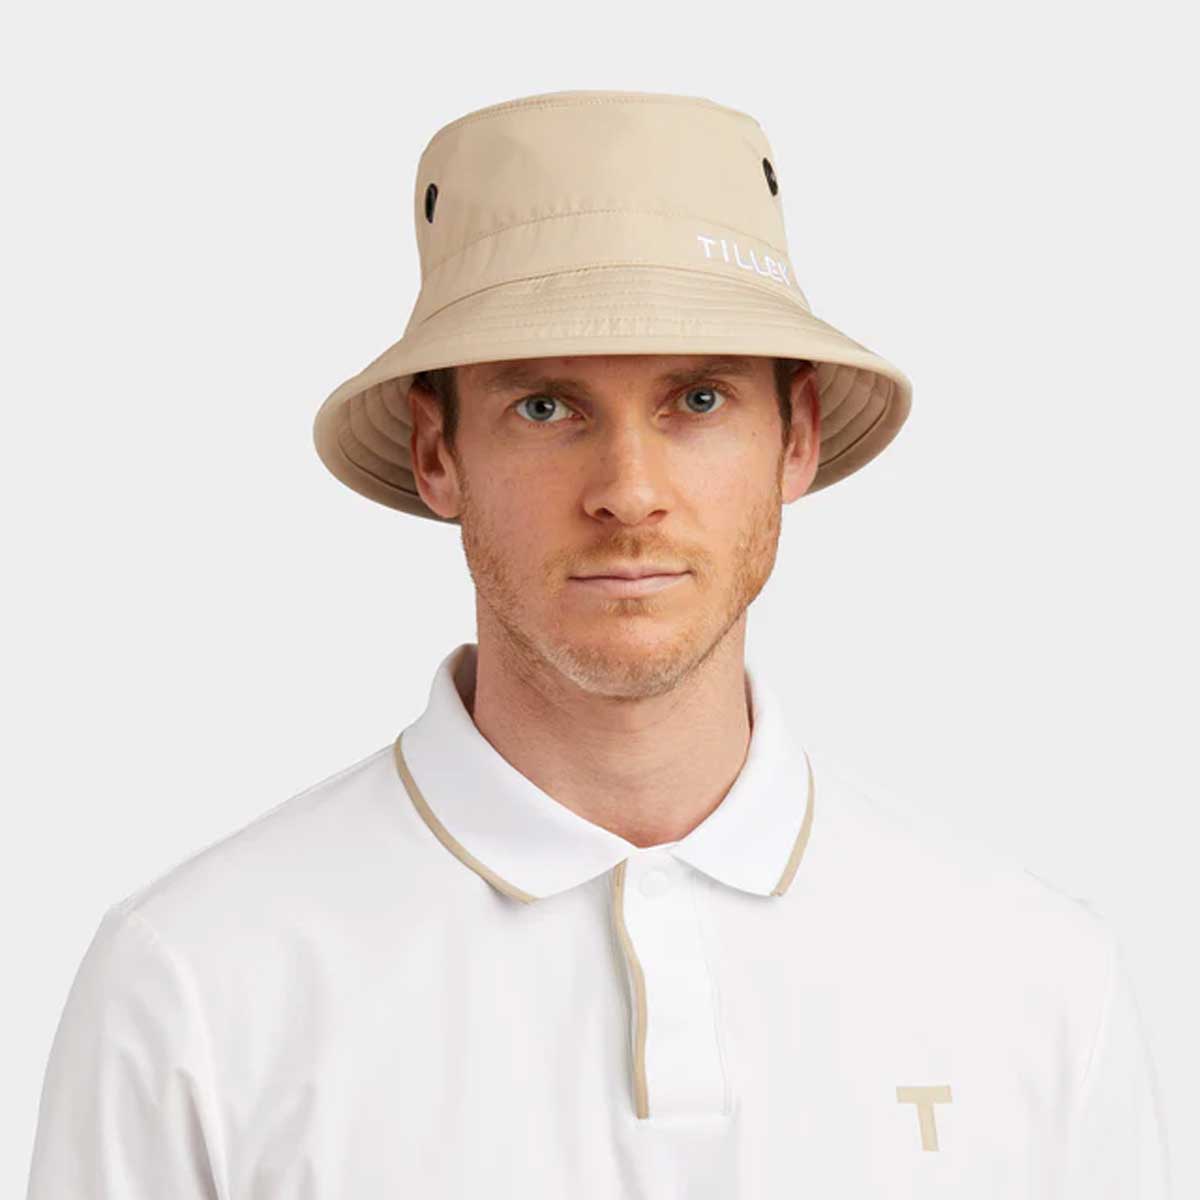 TILLEY Golf Bucket Hat - Light Tan